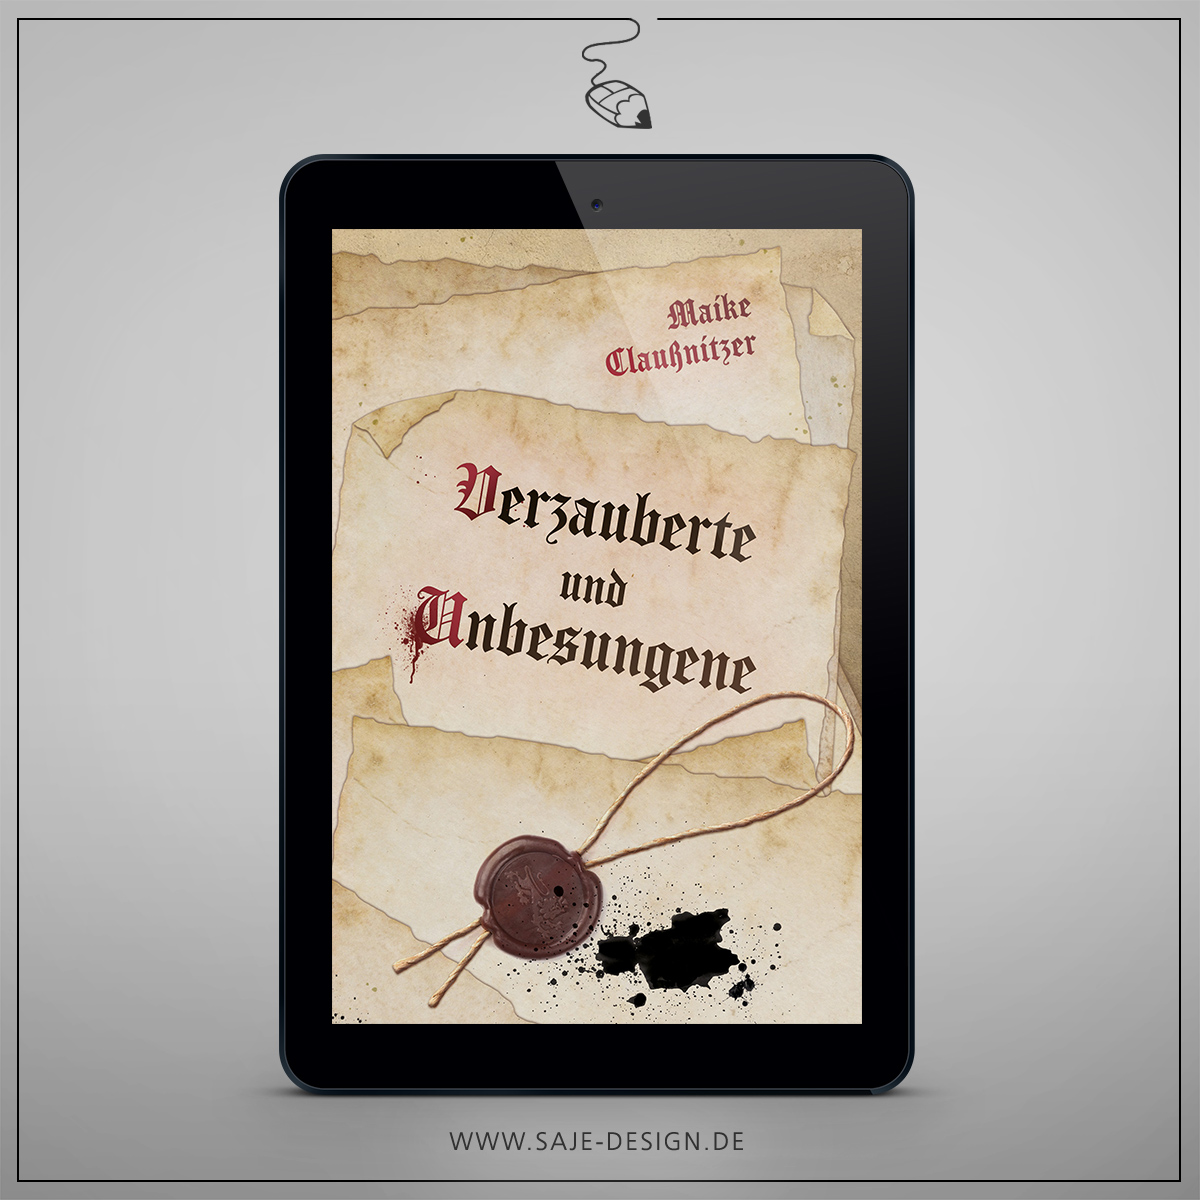 E-Book Cover für »Verzauberte und Unbesungene« von Maike Claußnitzer